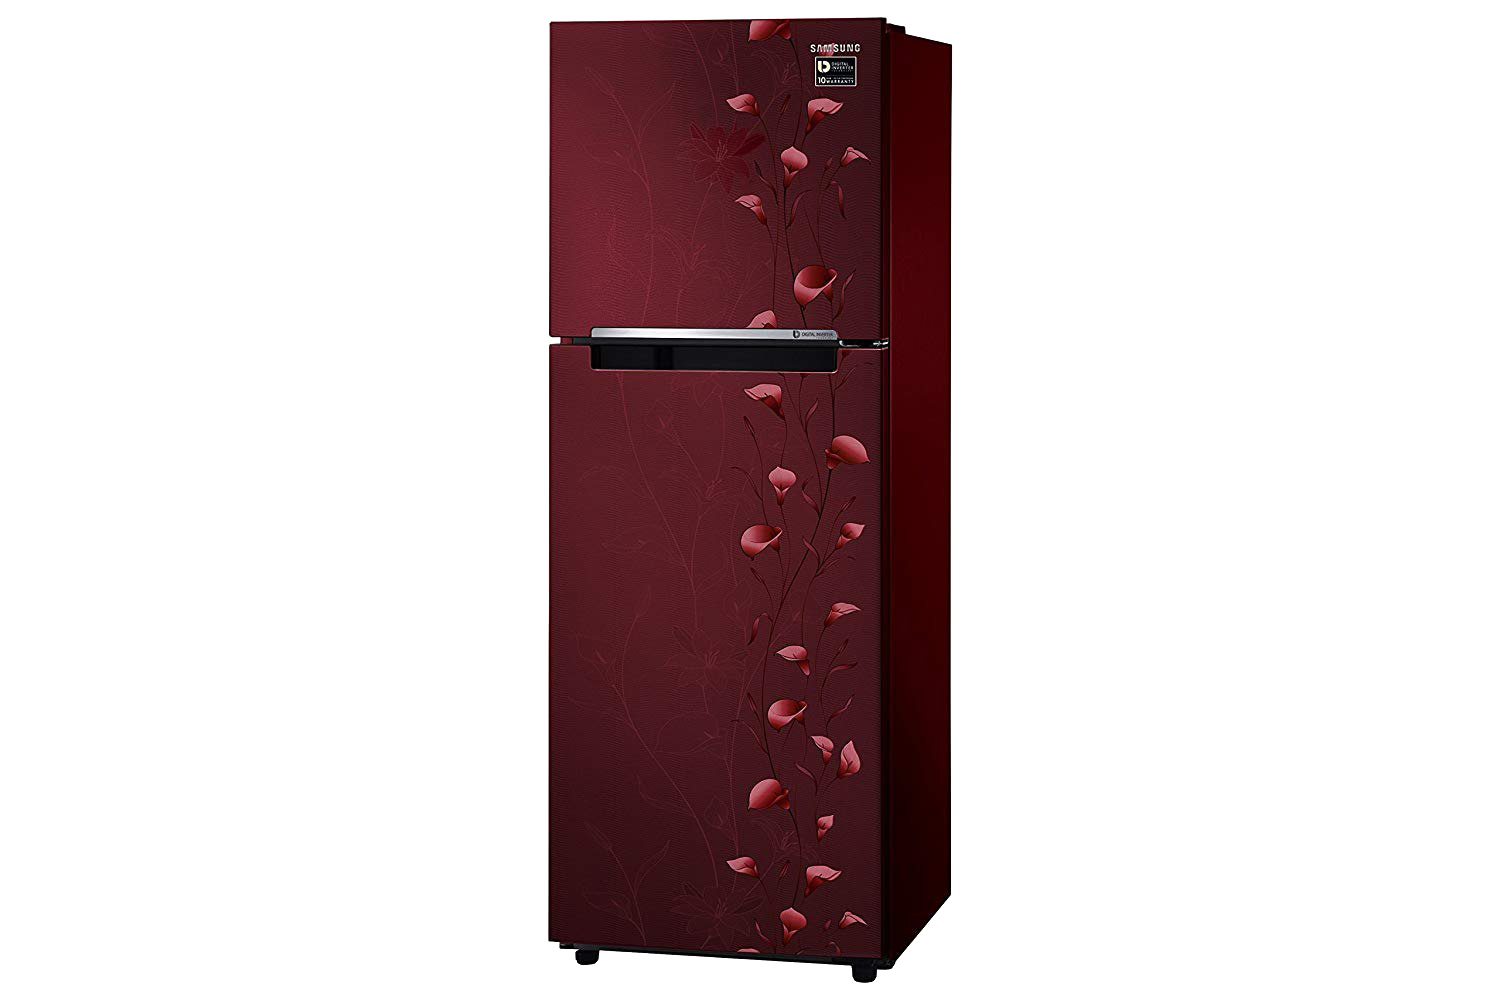 Immagine del PNG del fondo del frigorifero